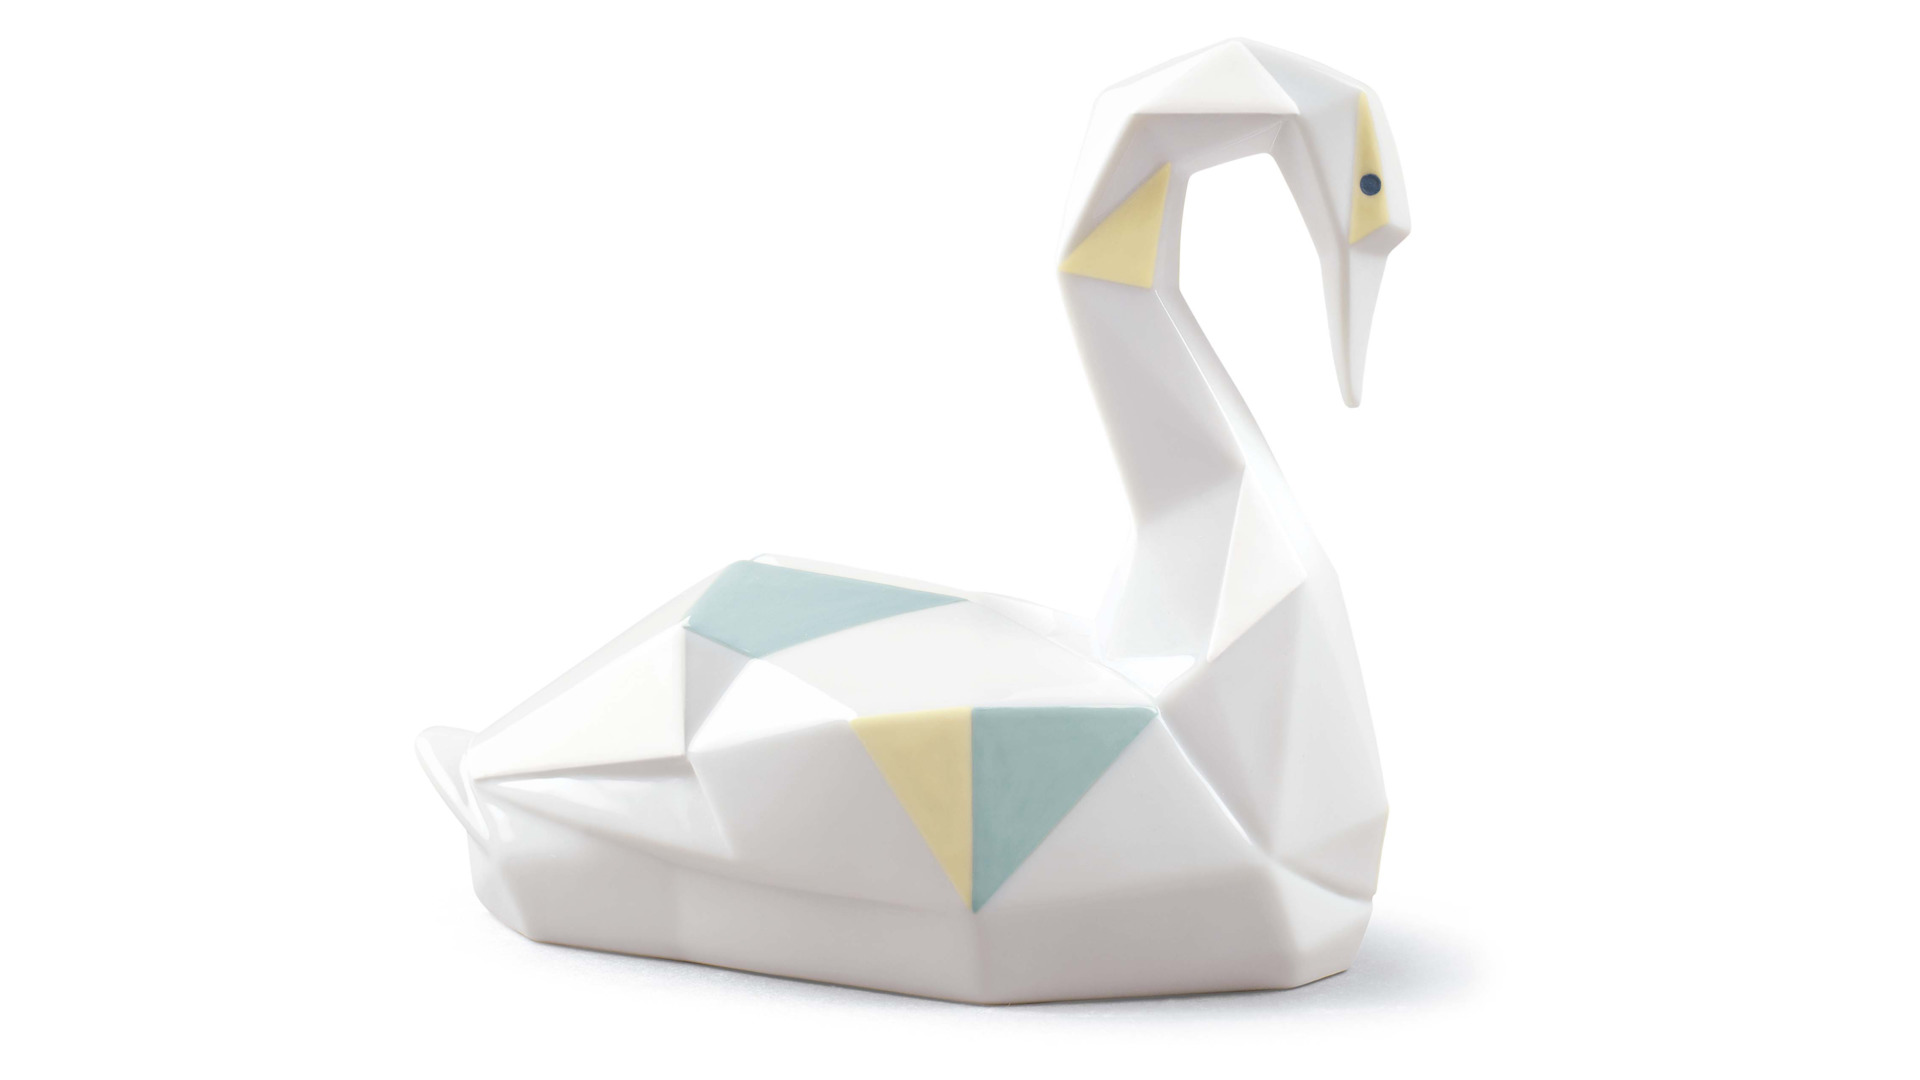 Фигурка Lladro Лебедь оригами, цветной 14х12 см, фарфор